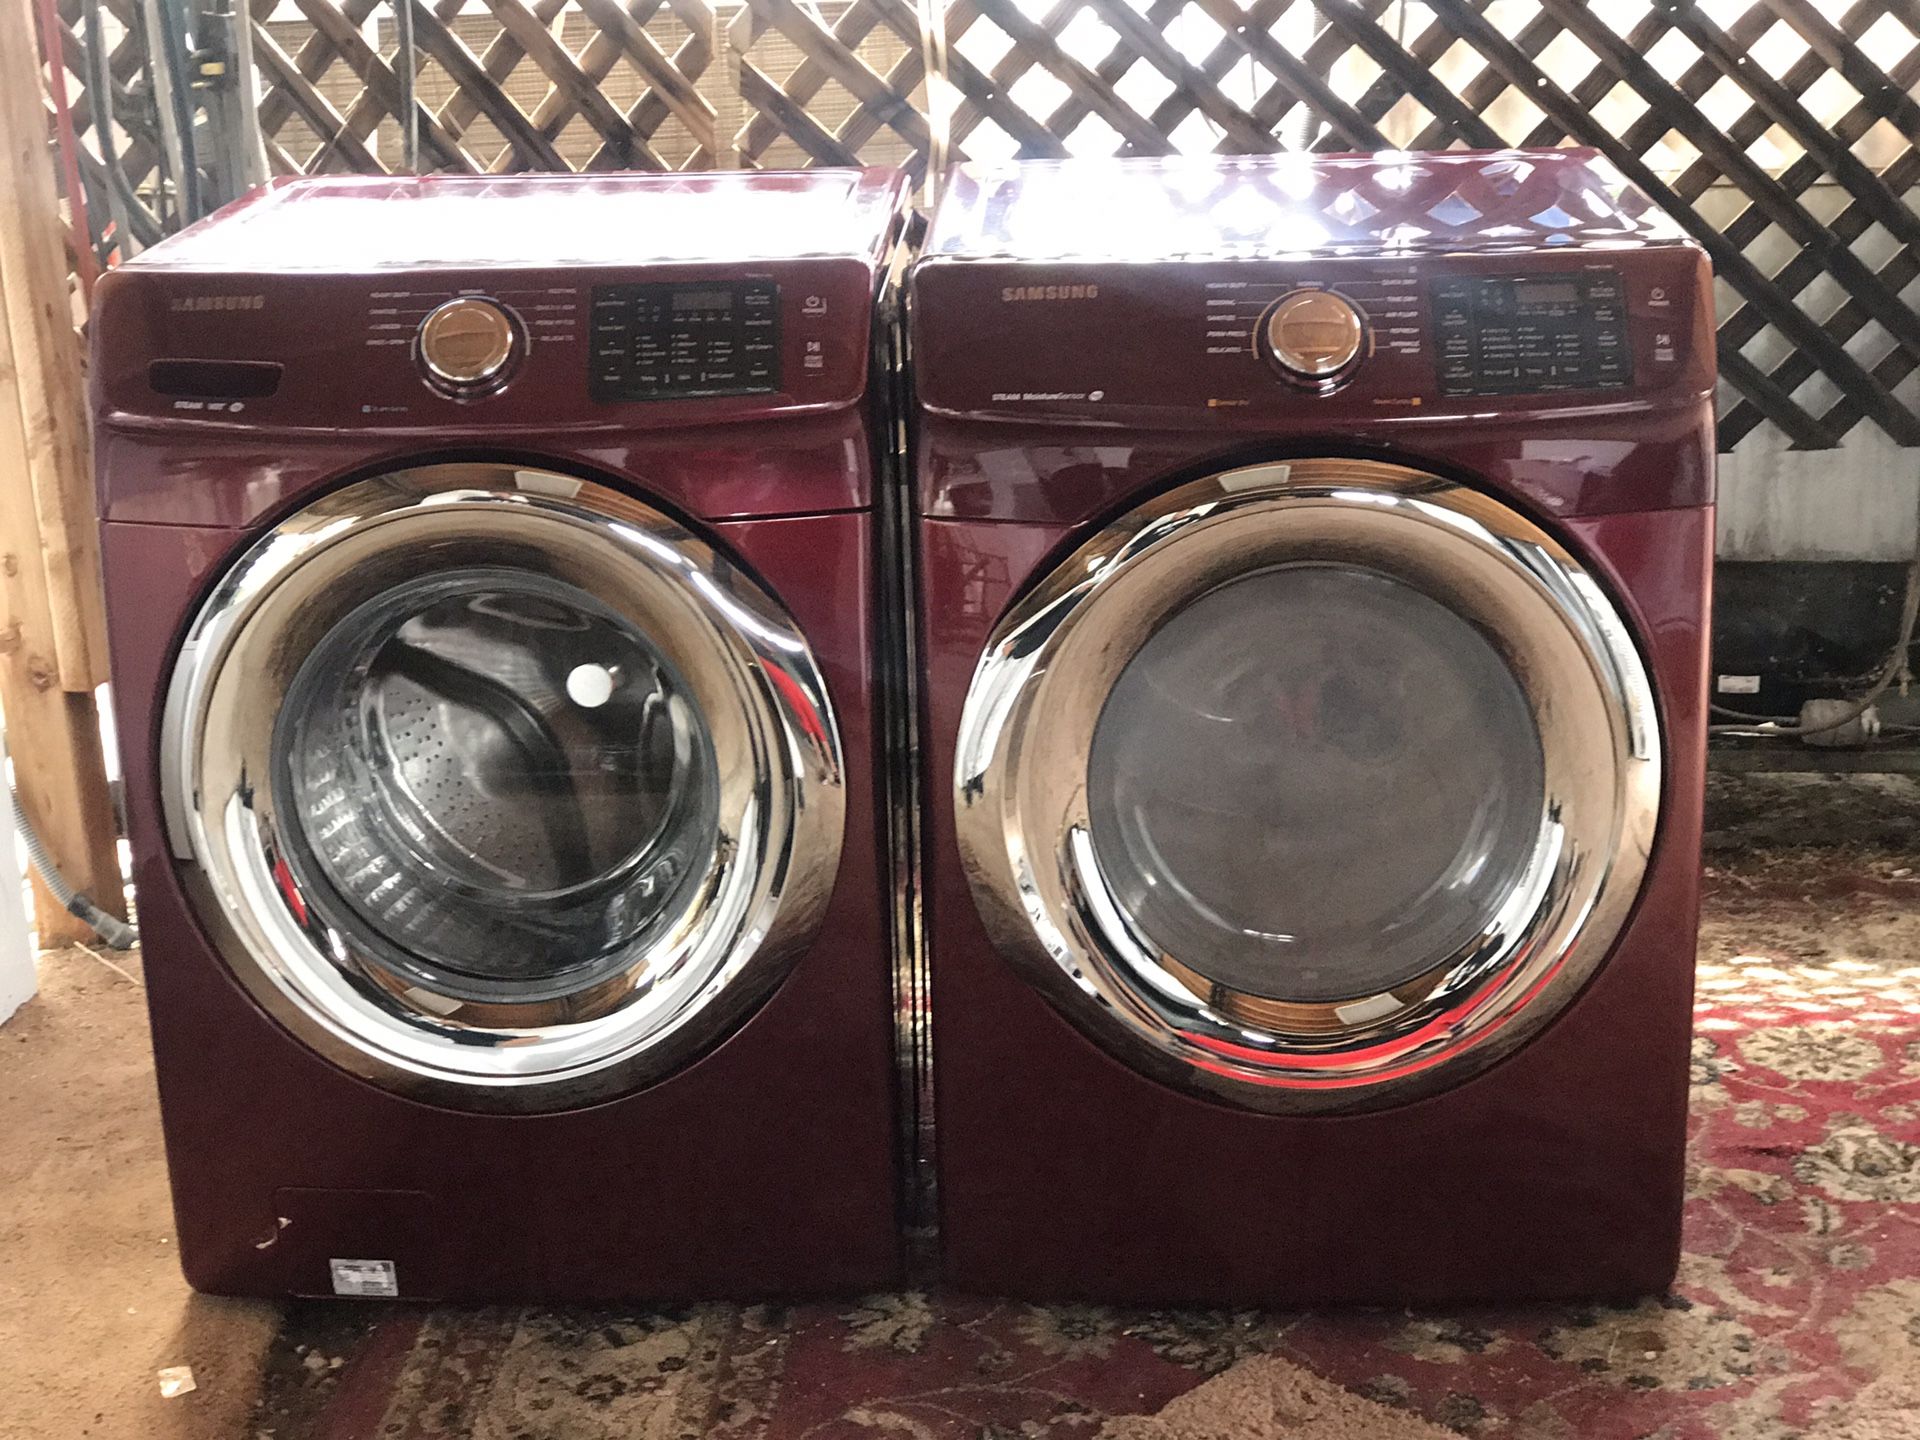 (Red) Samsung Washer & Dryer Set